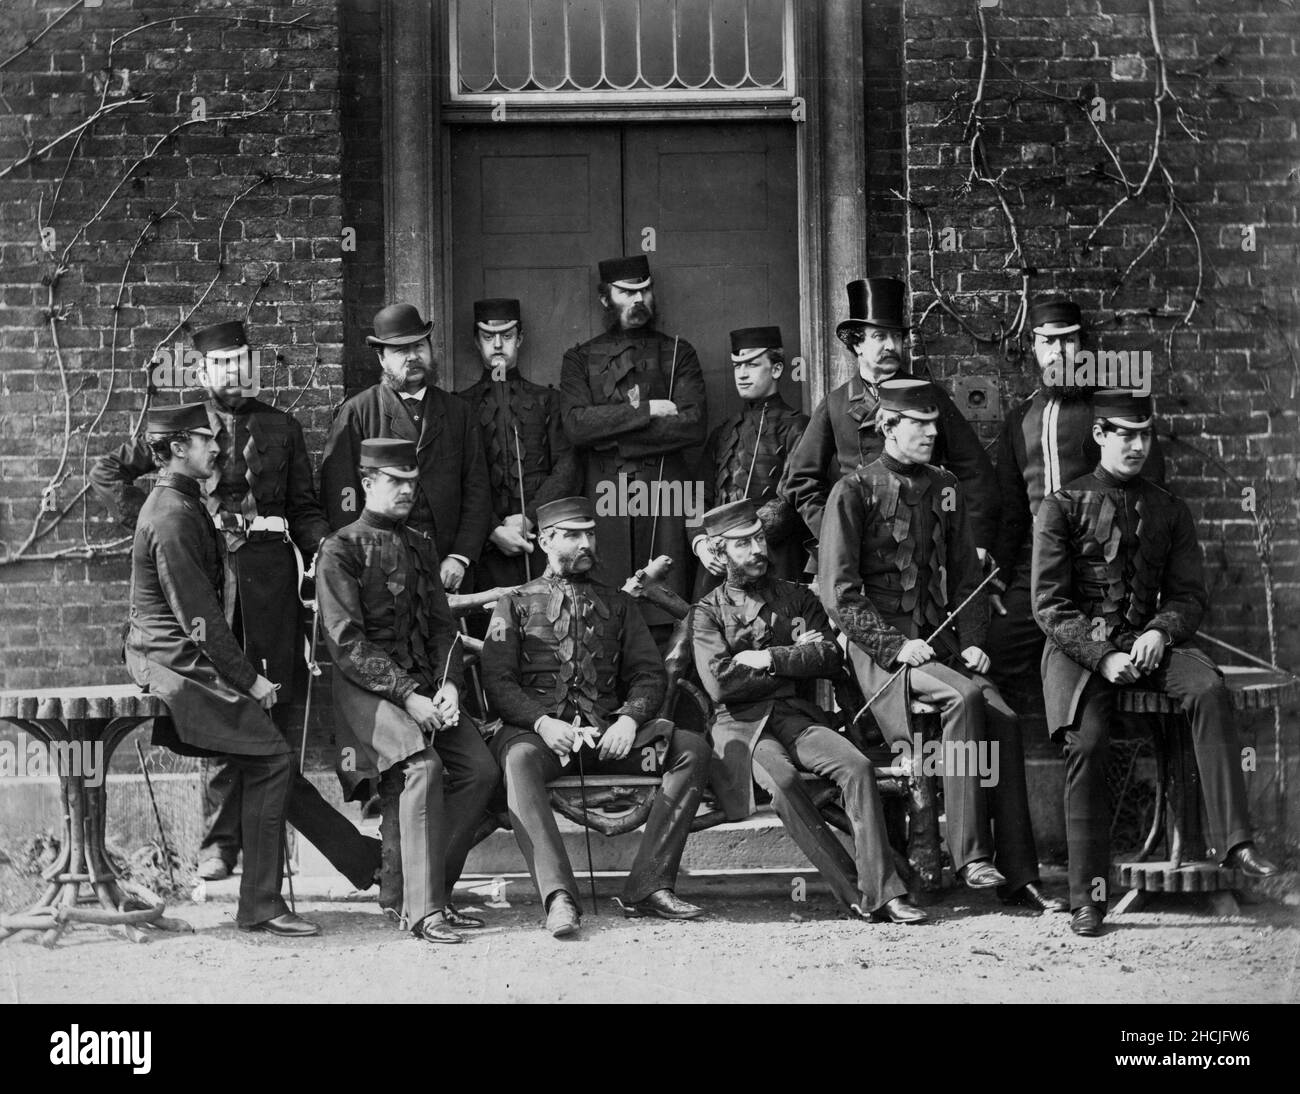 Gruppenfoto von viktorianischen britischen Armeeoffizieren lässig posiert Stockfoto